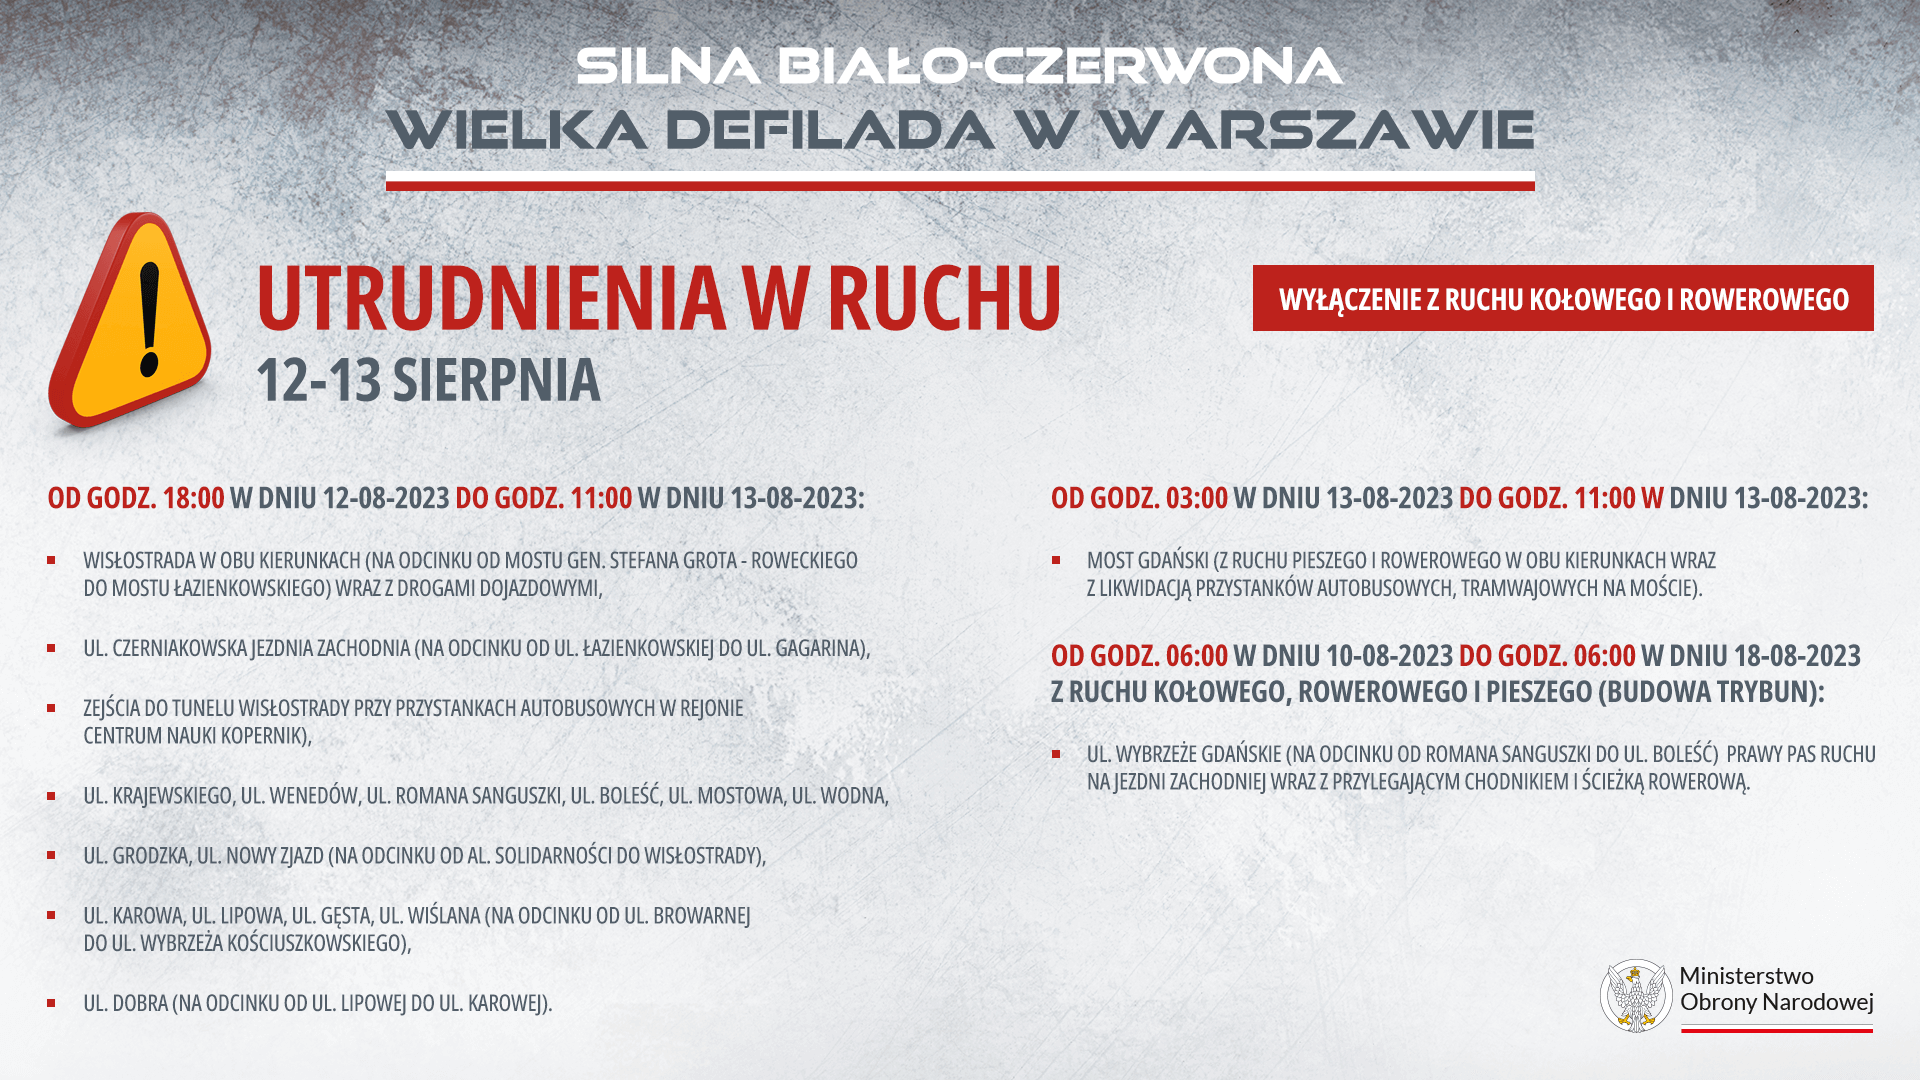 Wielka defilada Wojska Polskiego - utrudnienia komunikacyjne 12-13 sierpnia